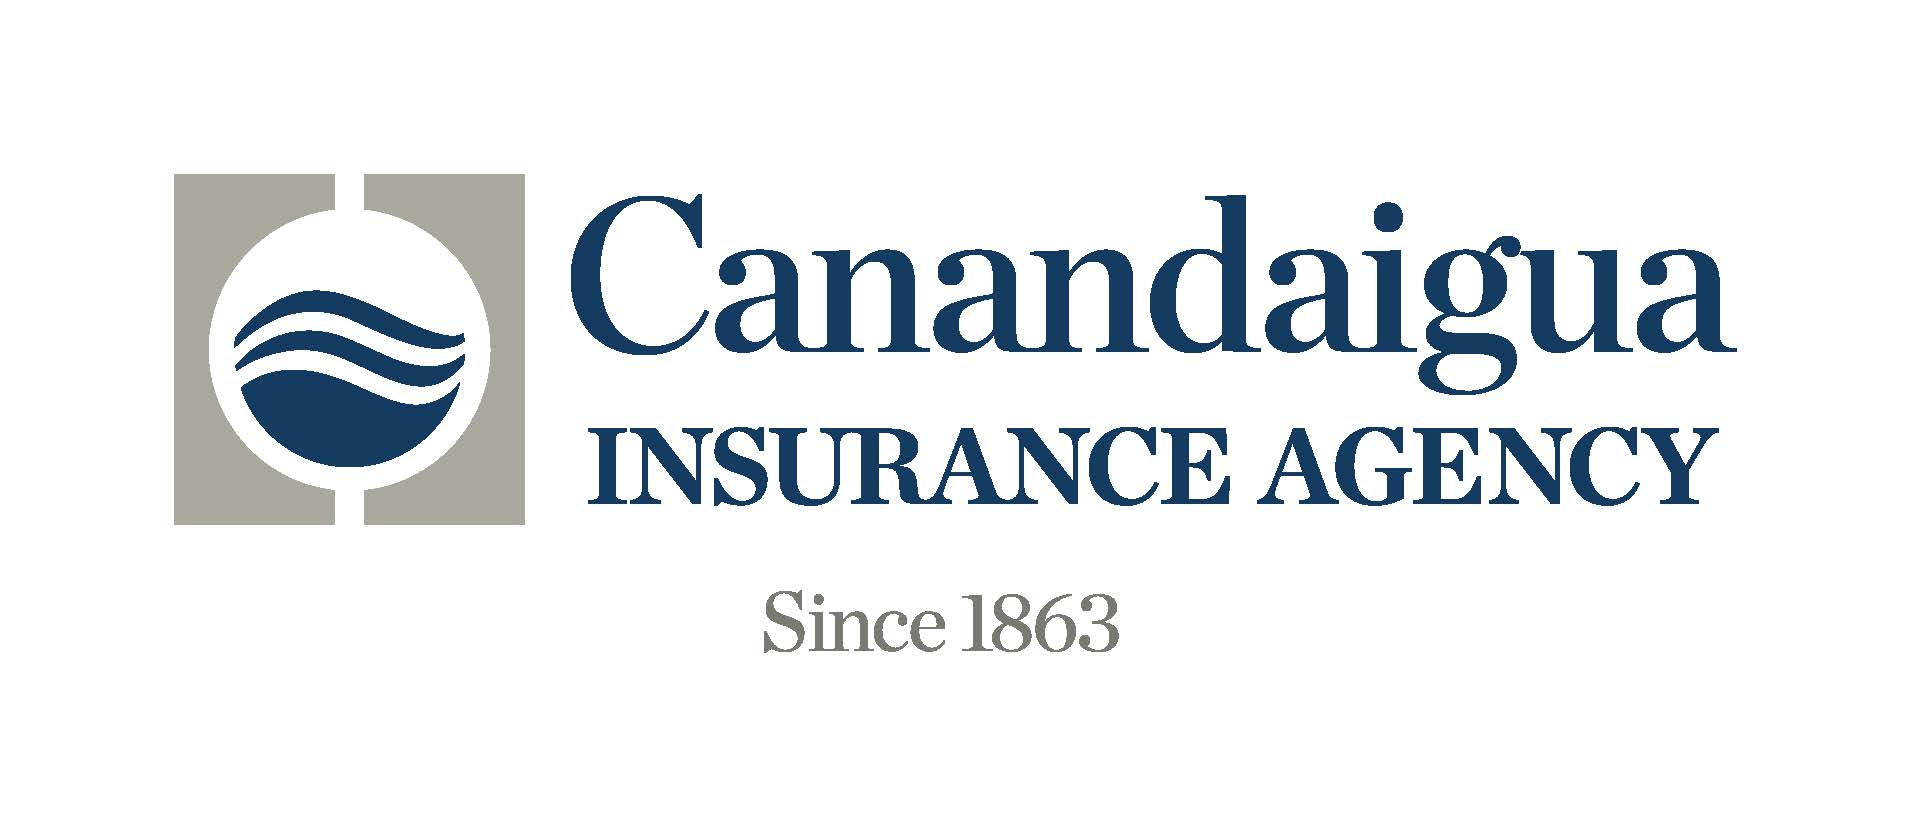 Visit https://www.canandaiguainsurance.com/